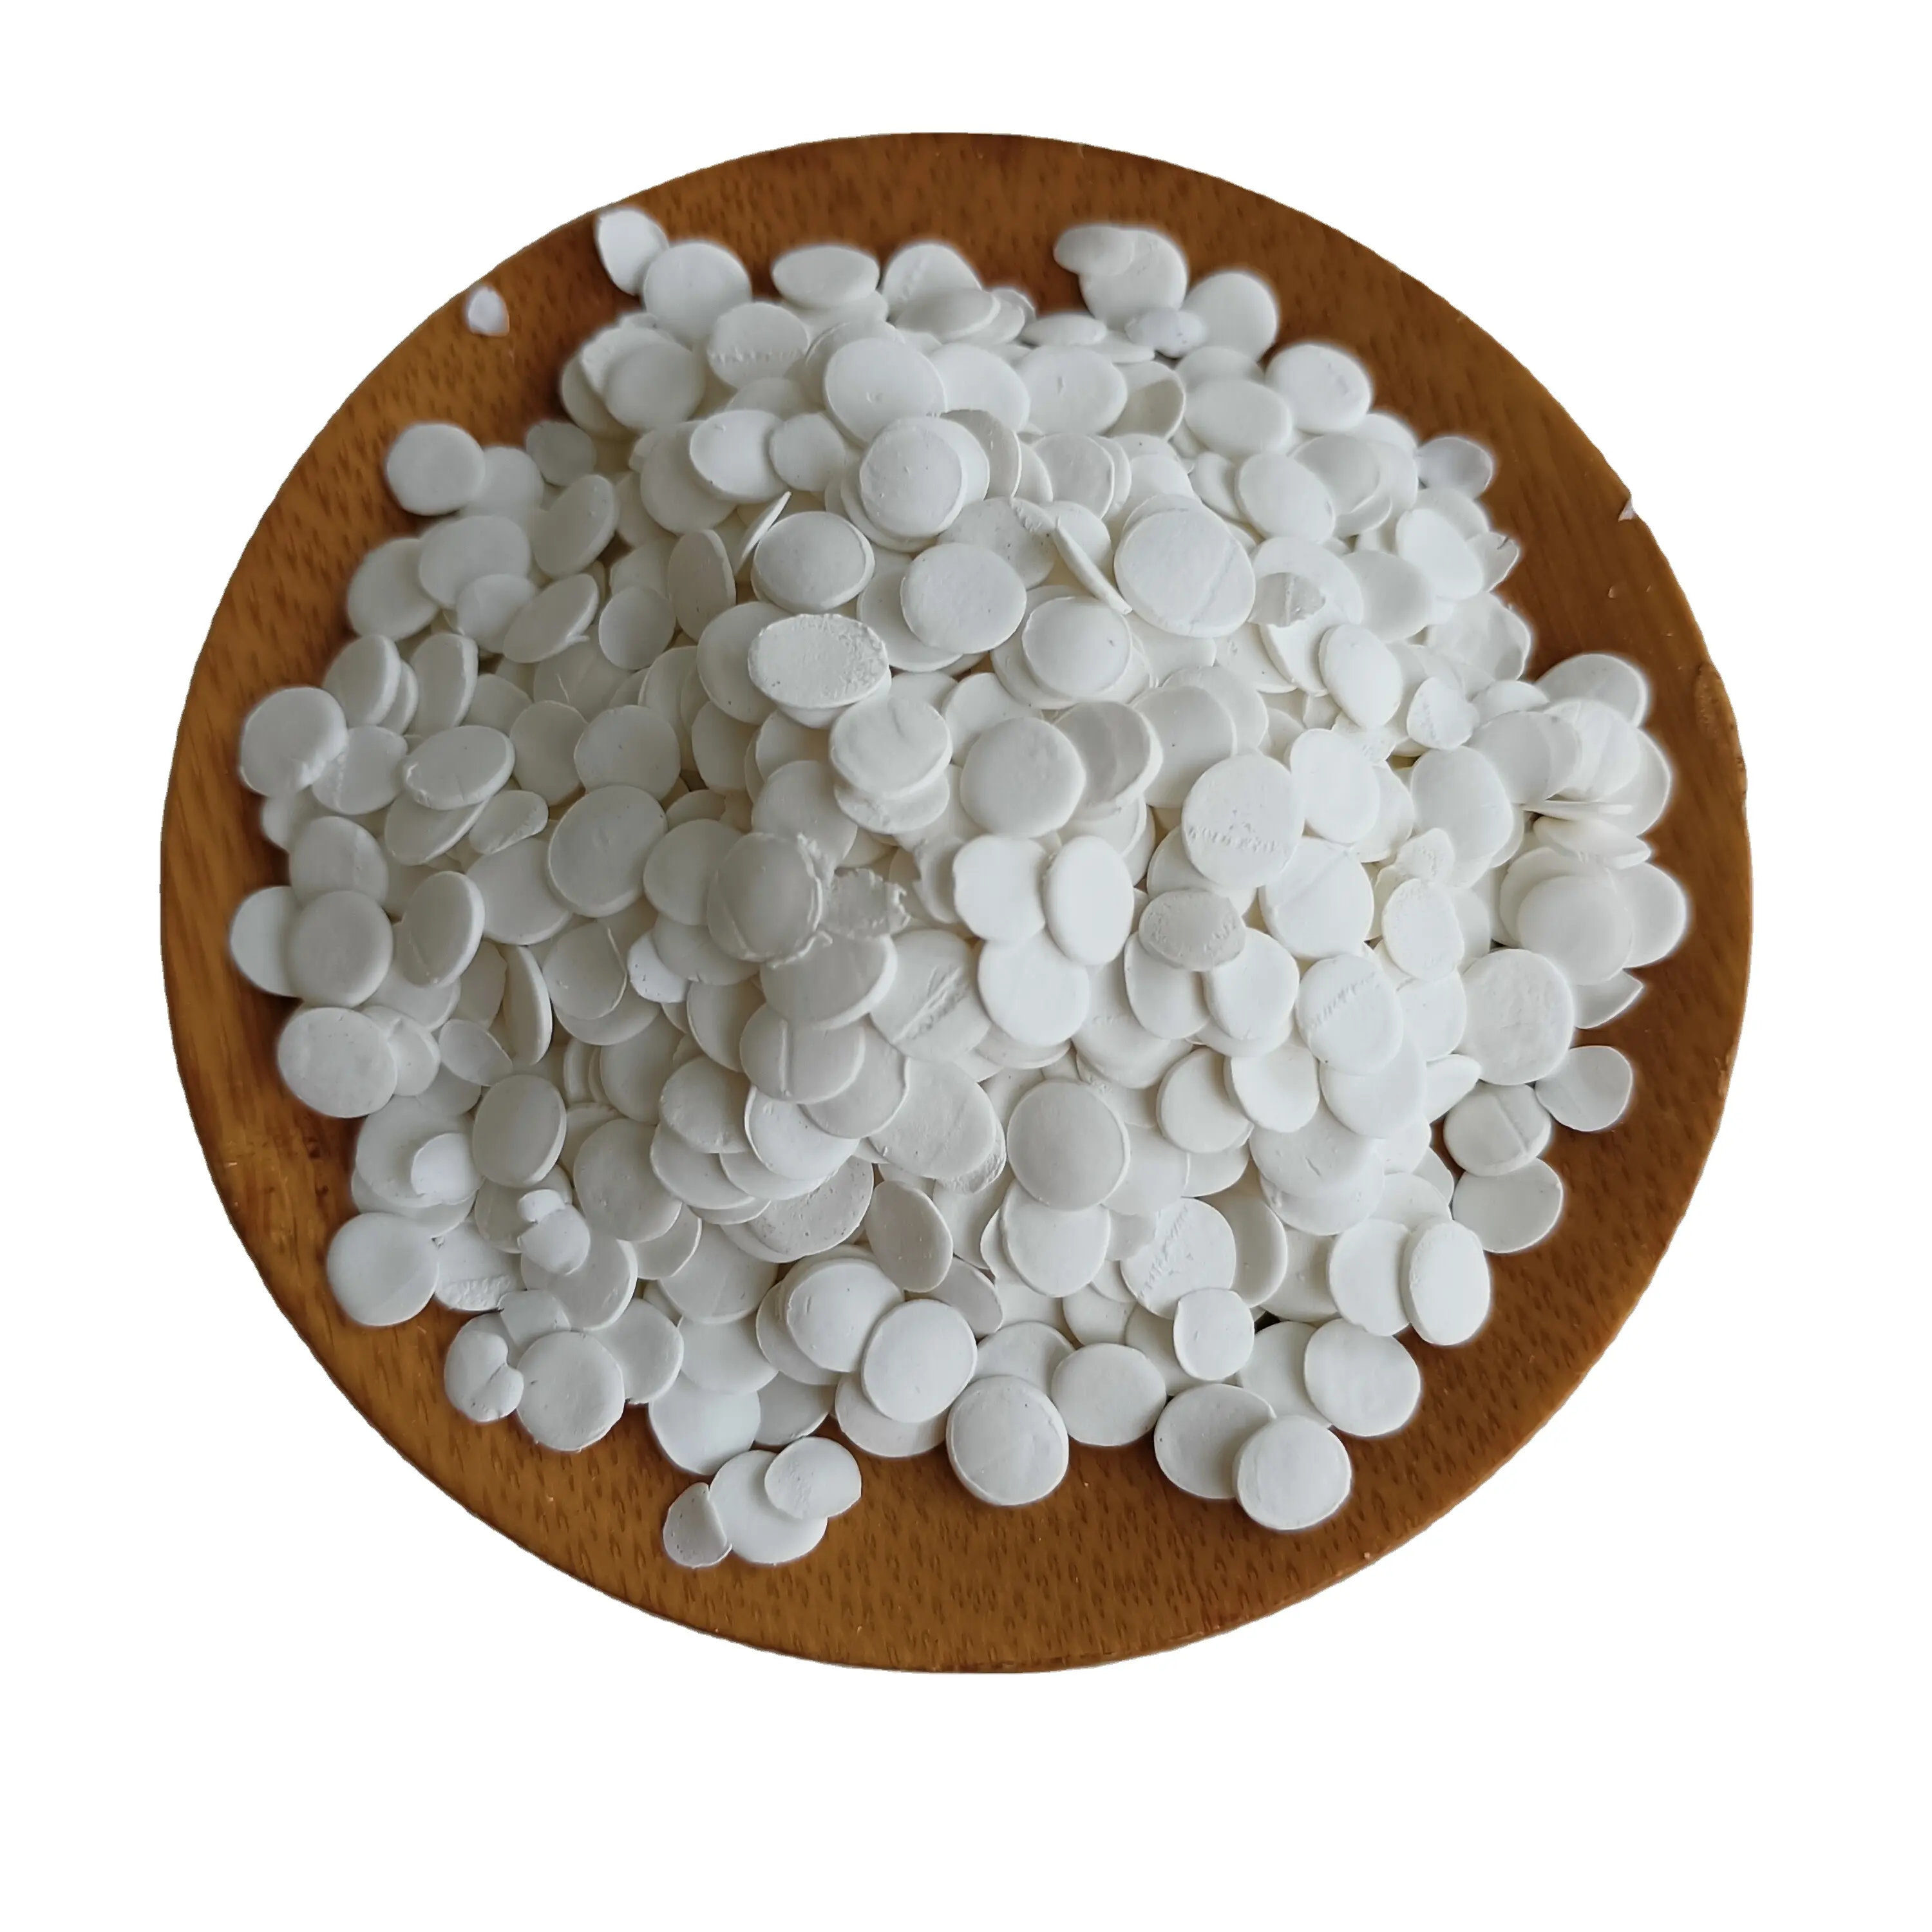 مادة مضافة لمادة البوليمير المضاف لمادة البوليمير من مواد التصنيع المضافة